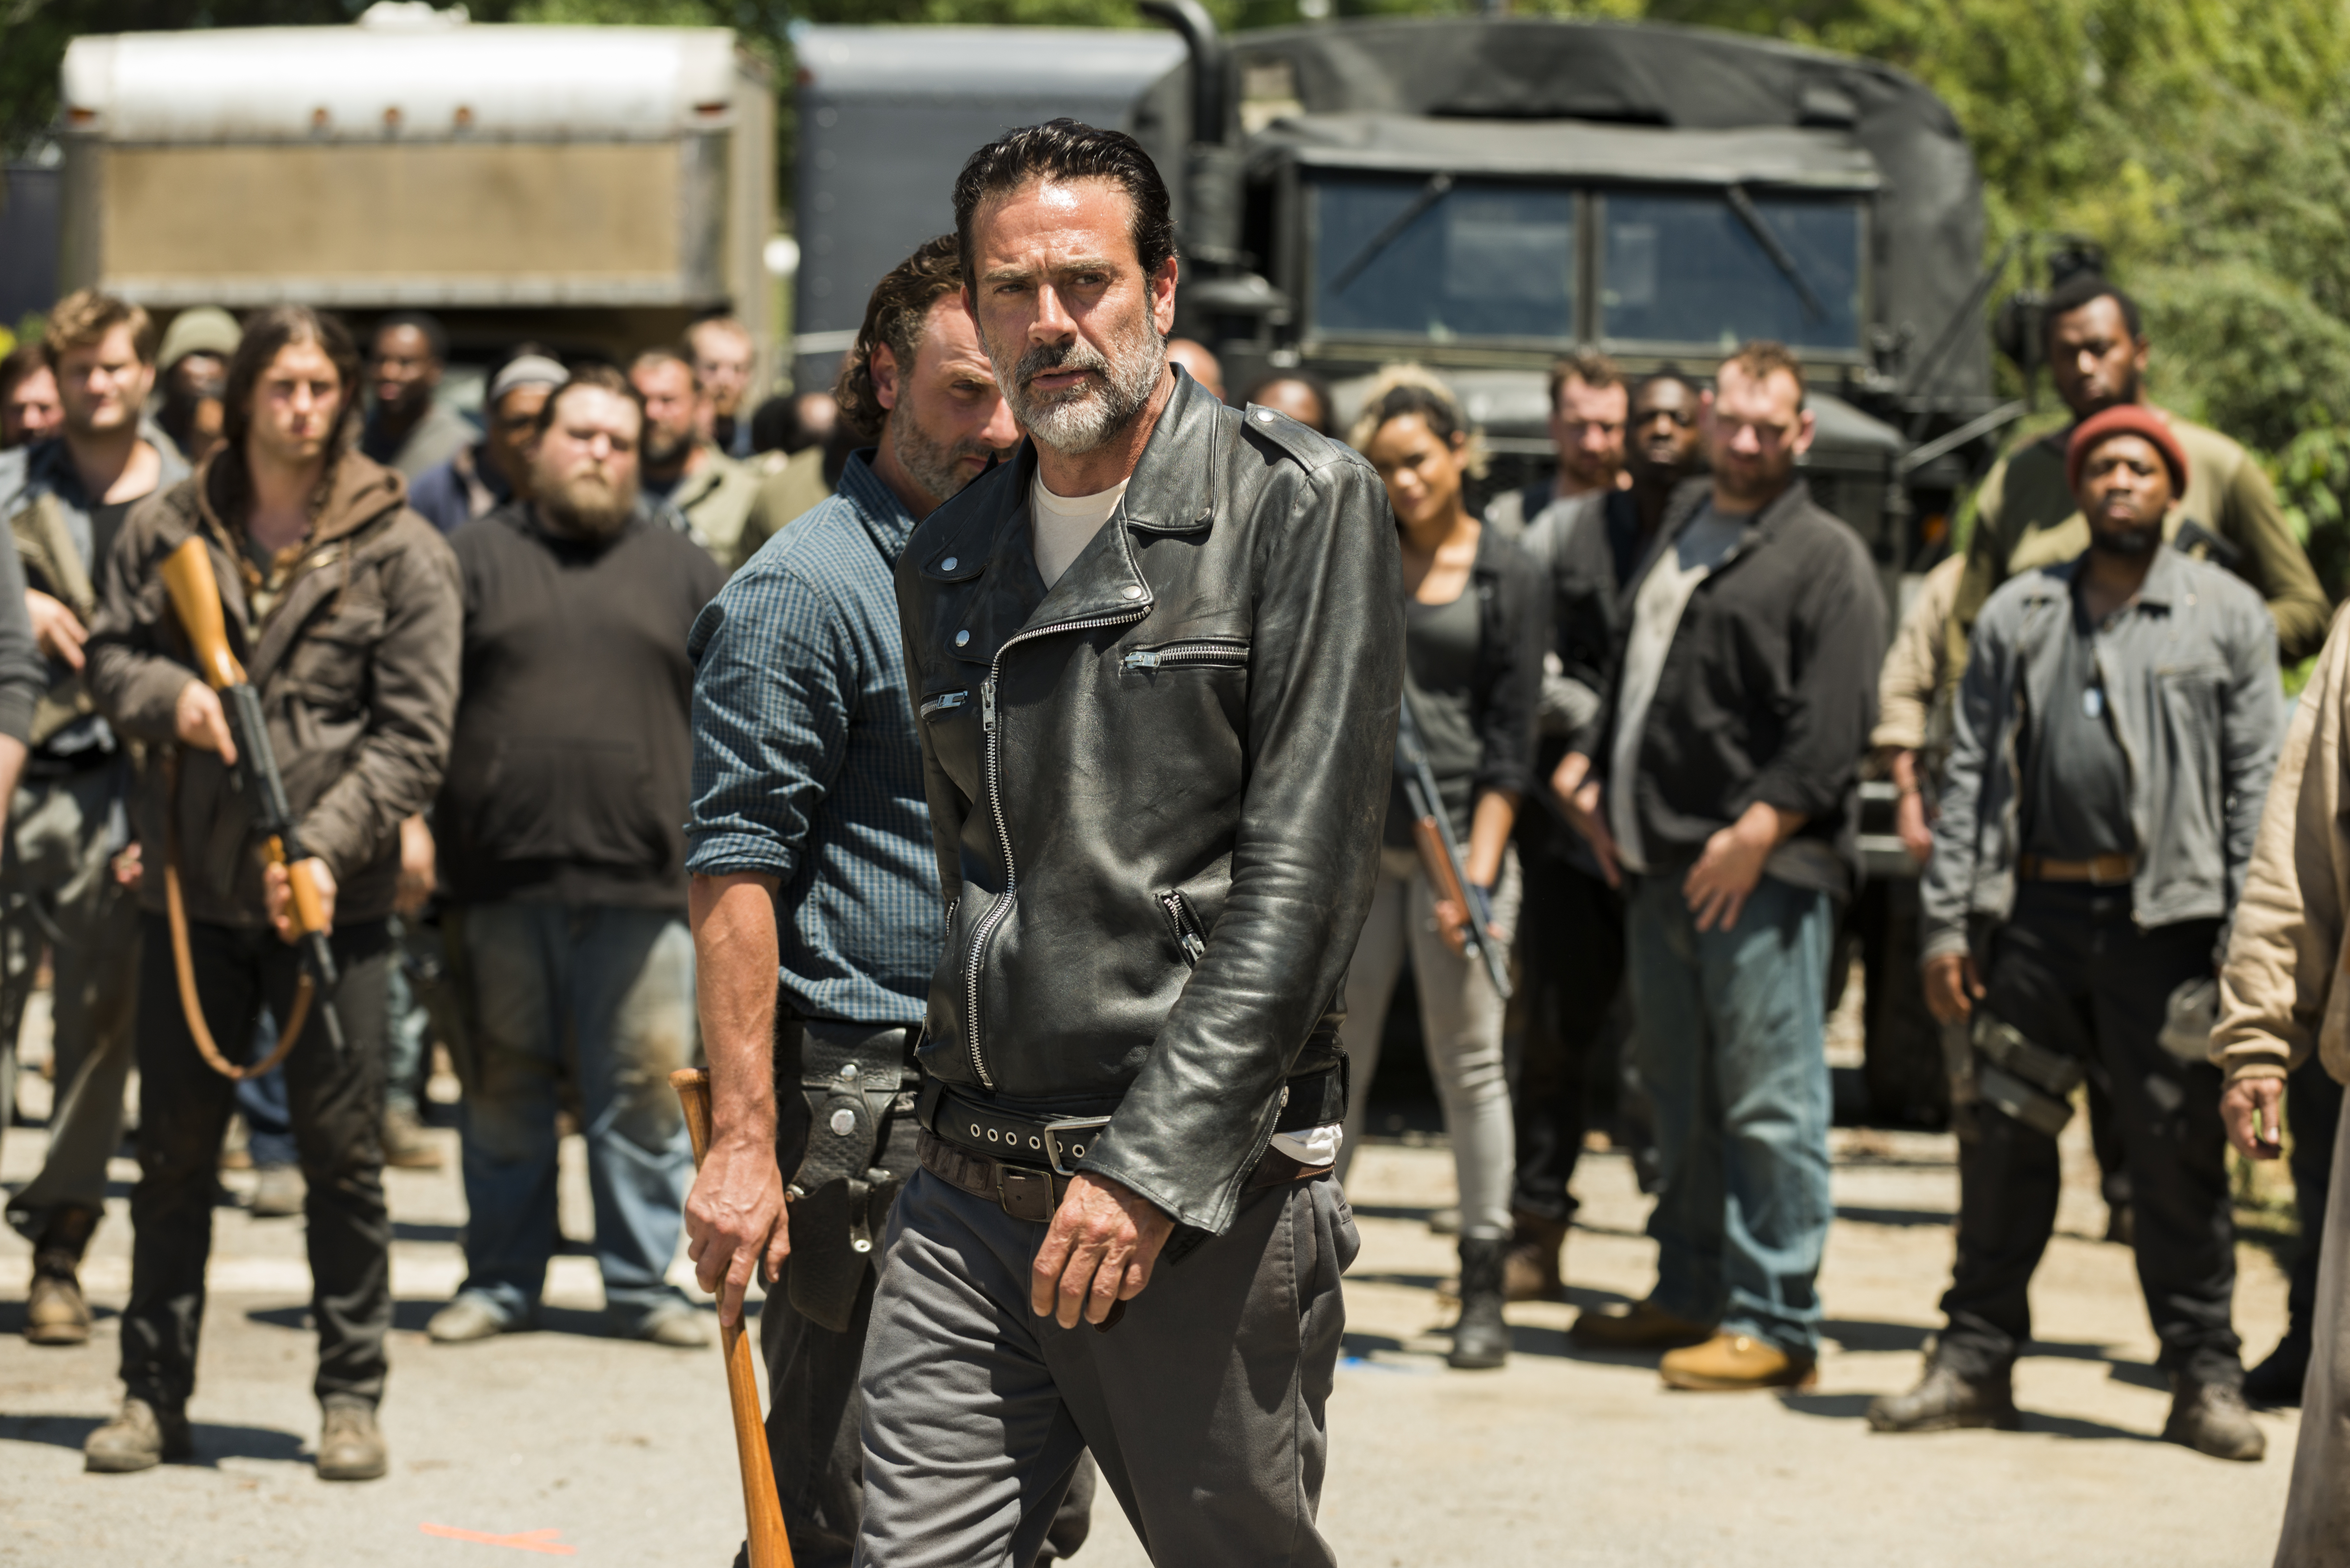 Negan (Jeffrey Dean Morgan), Rick Grimes (Andrew Lincoln) - The Walking Dead Saison 7 Épisode 4 - Photo: Gene Page/AMC